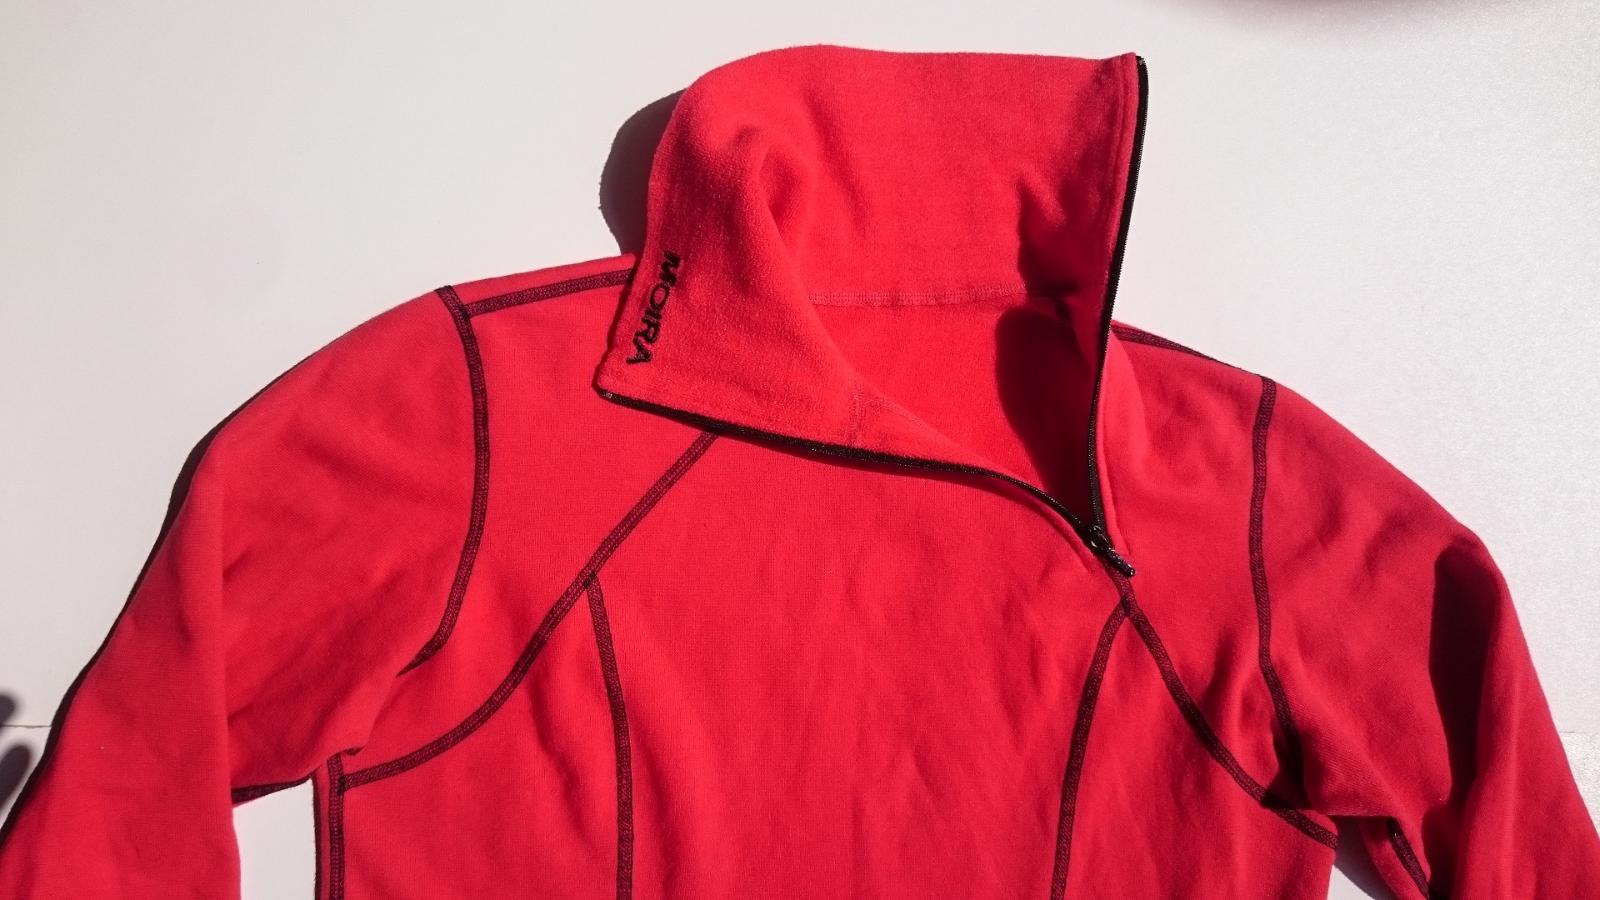 MOIRA PLYŠ červené funkční triko dl. rukáv vel. L - Vybavení na zimní sporty